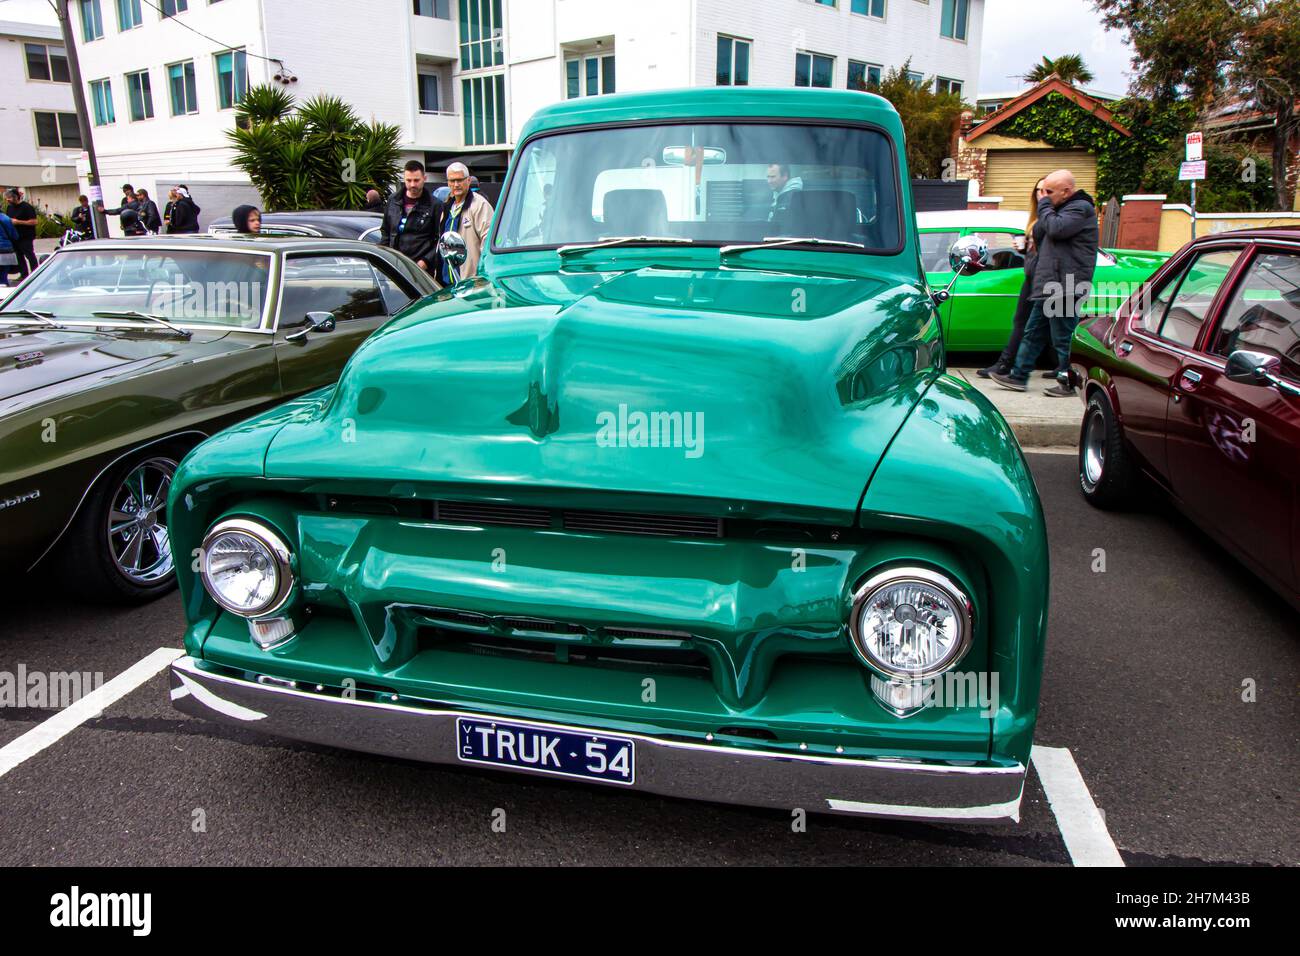 Green Classic Ute, Melbourne Car show Father's day. St Kilda, Victoria, Australia. Stock Photo